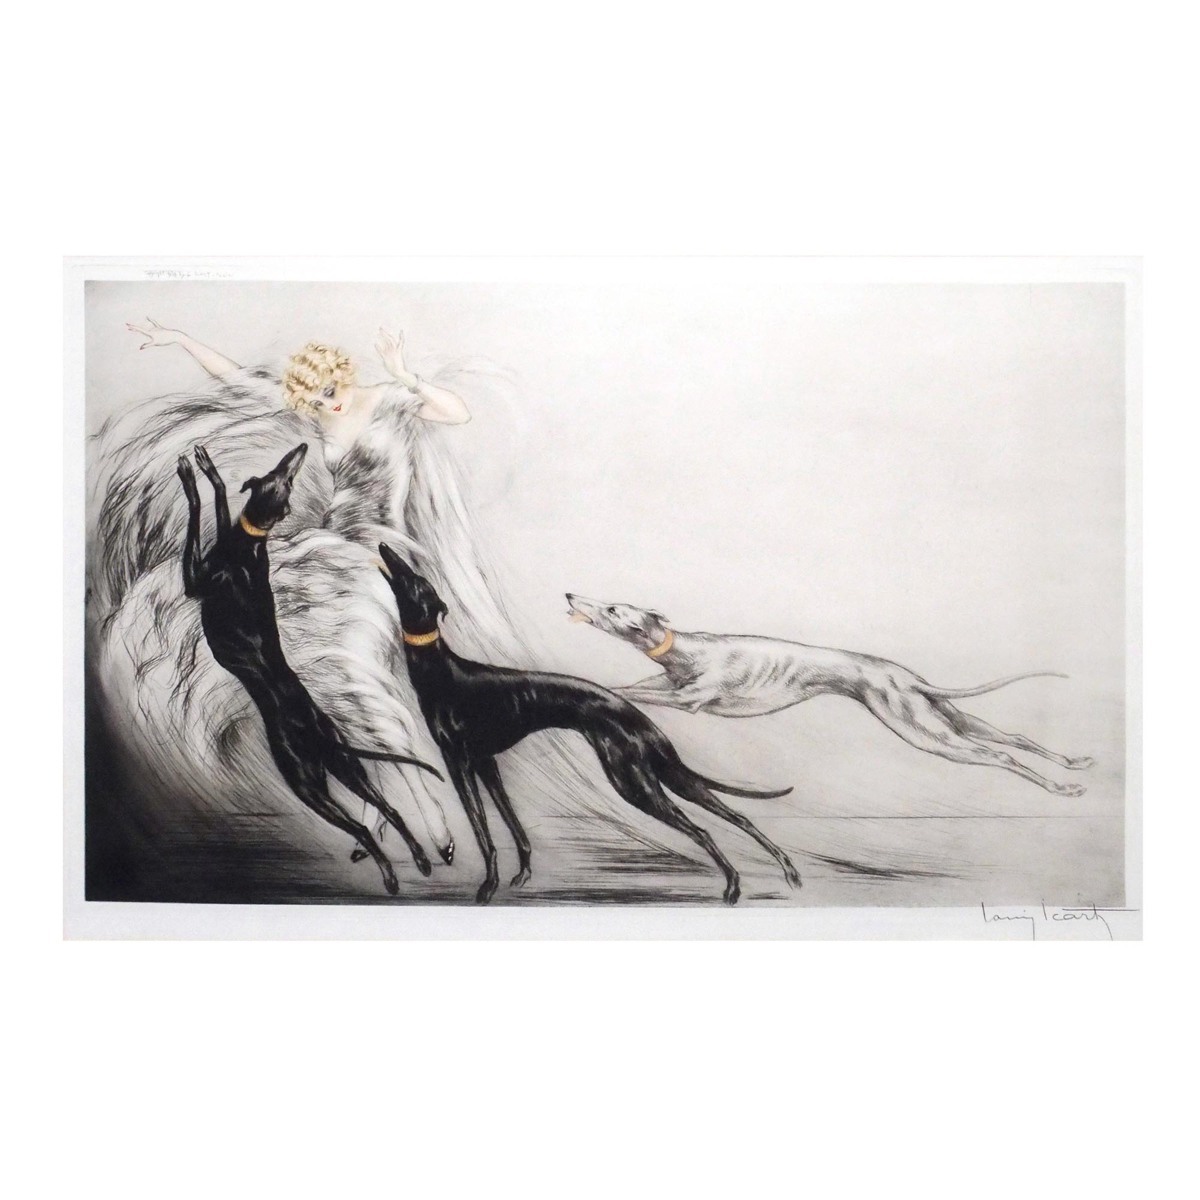 ルイ・イカール 「コージングII」 /エッチング/直筆サイン有り/1929年制作/アールデコ時代にフランスで活躍/真作保証/ENCHANTE_画像1